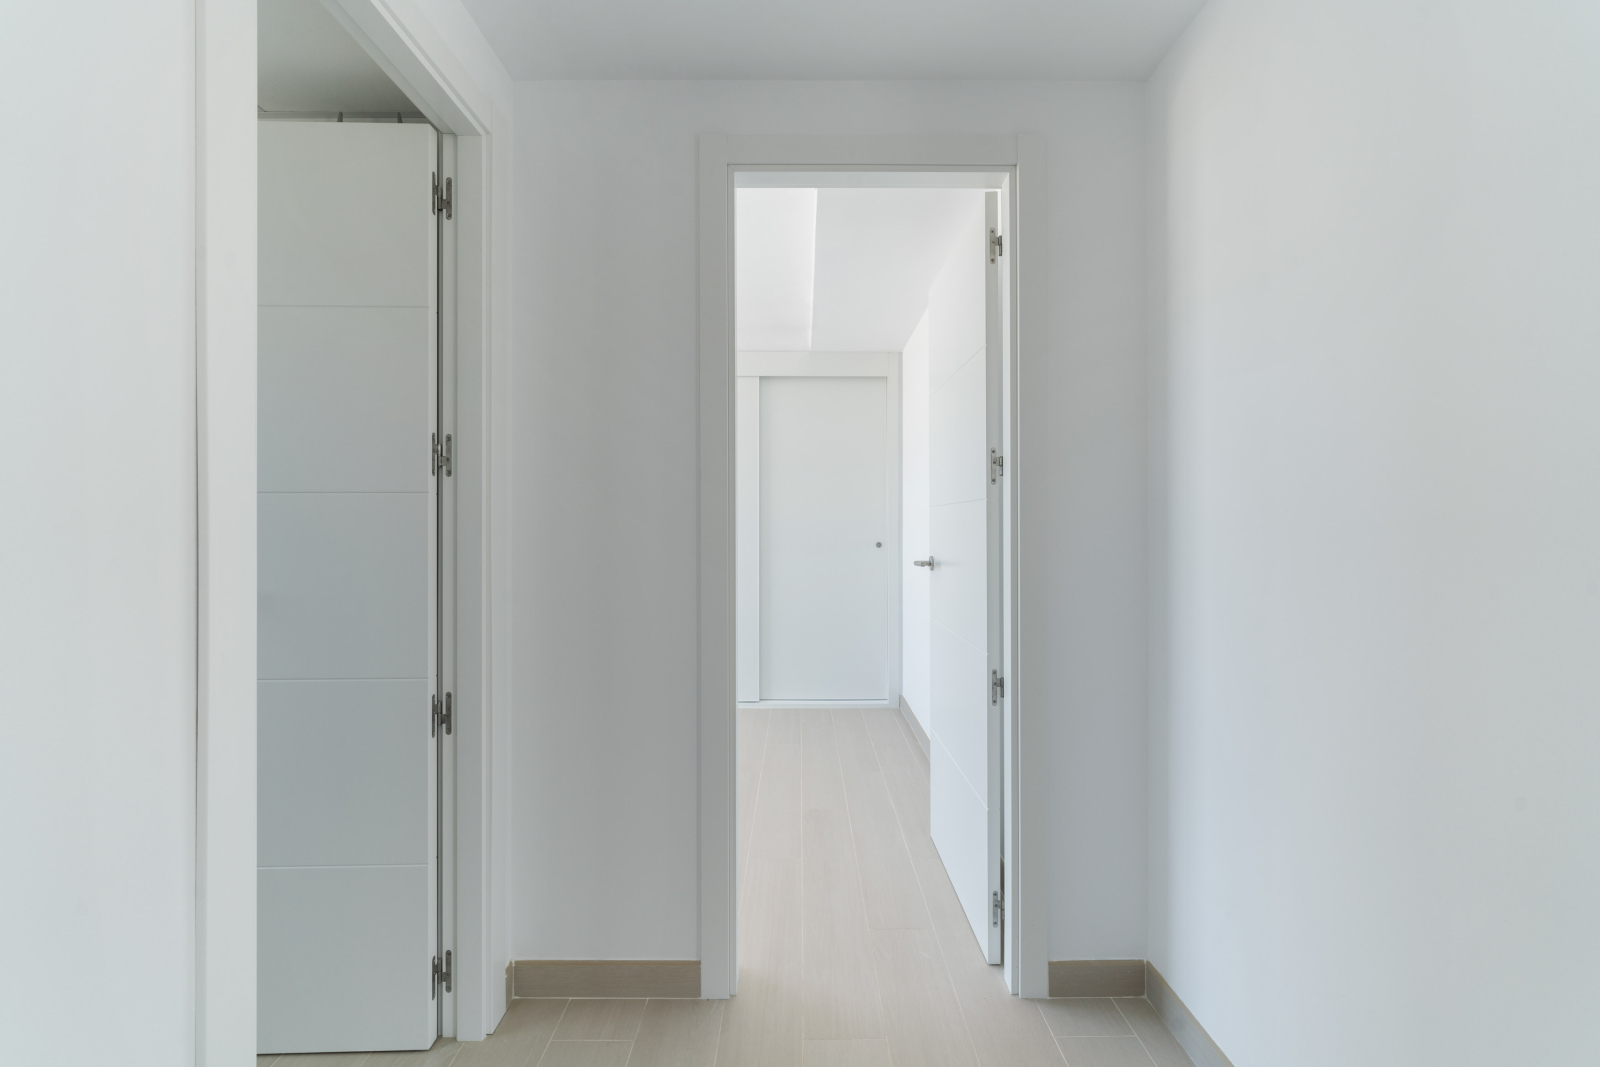 Nieuwbouw appartement met twee slaapkamers in Vergel - oplevering in 2025